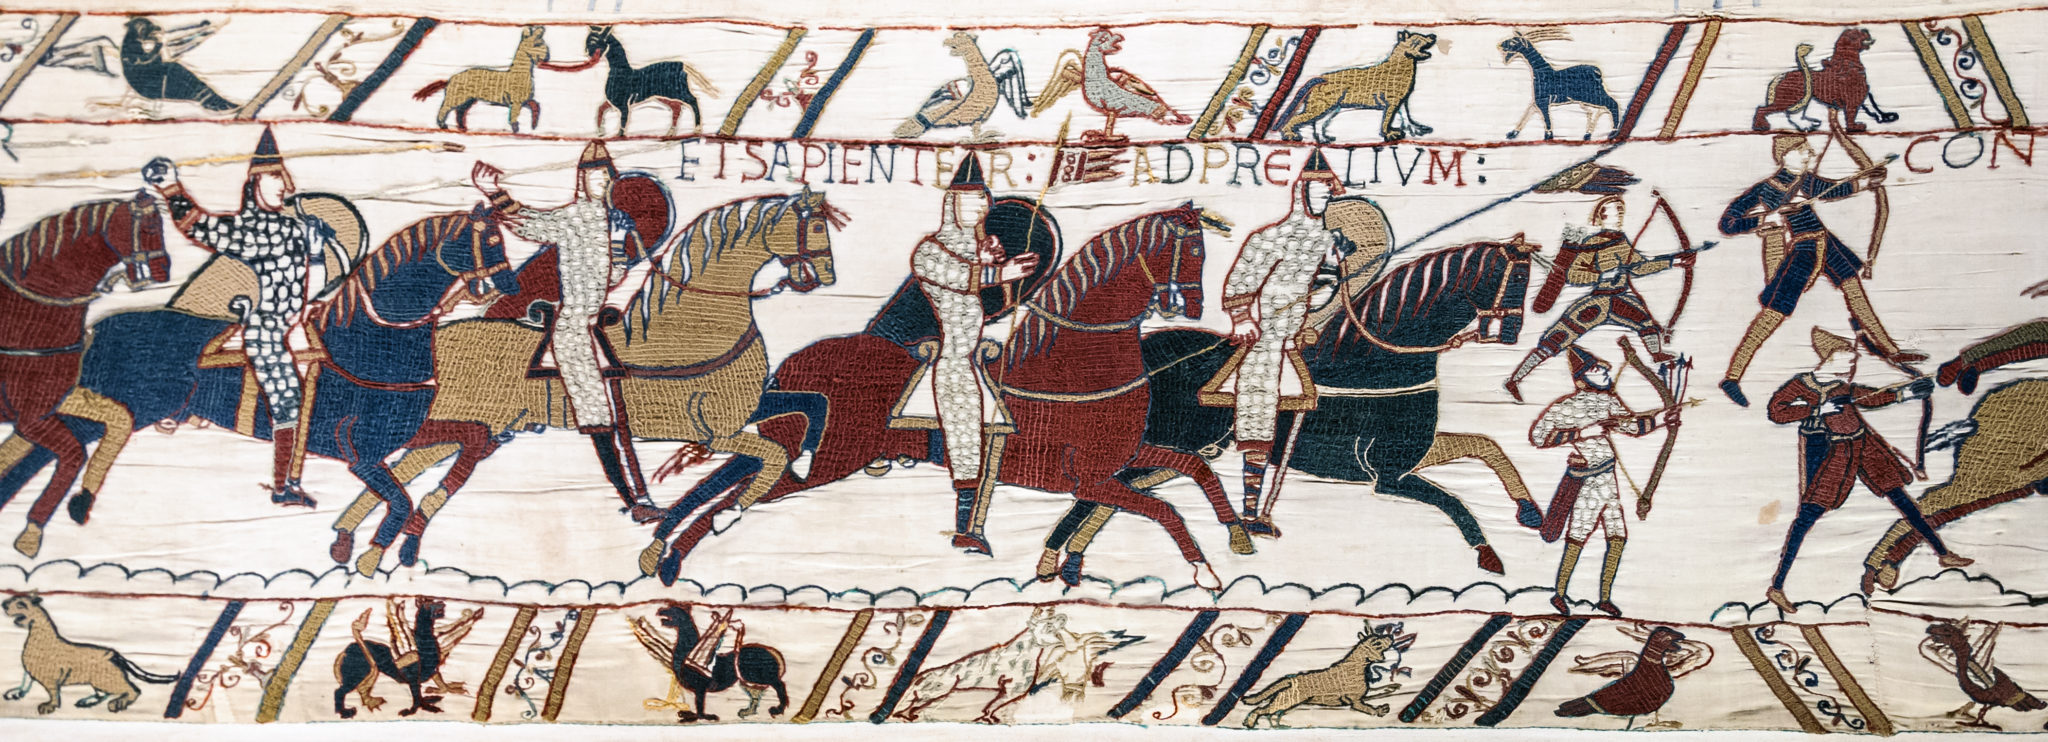 Art, propaganda, and history: Visiting the Bayeux Tapestry 